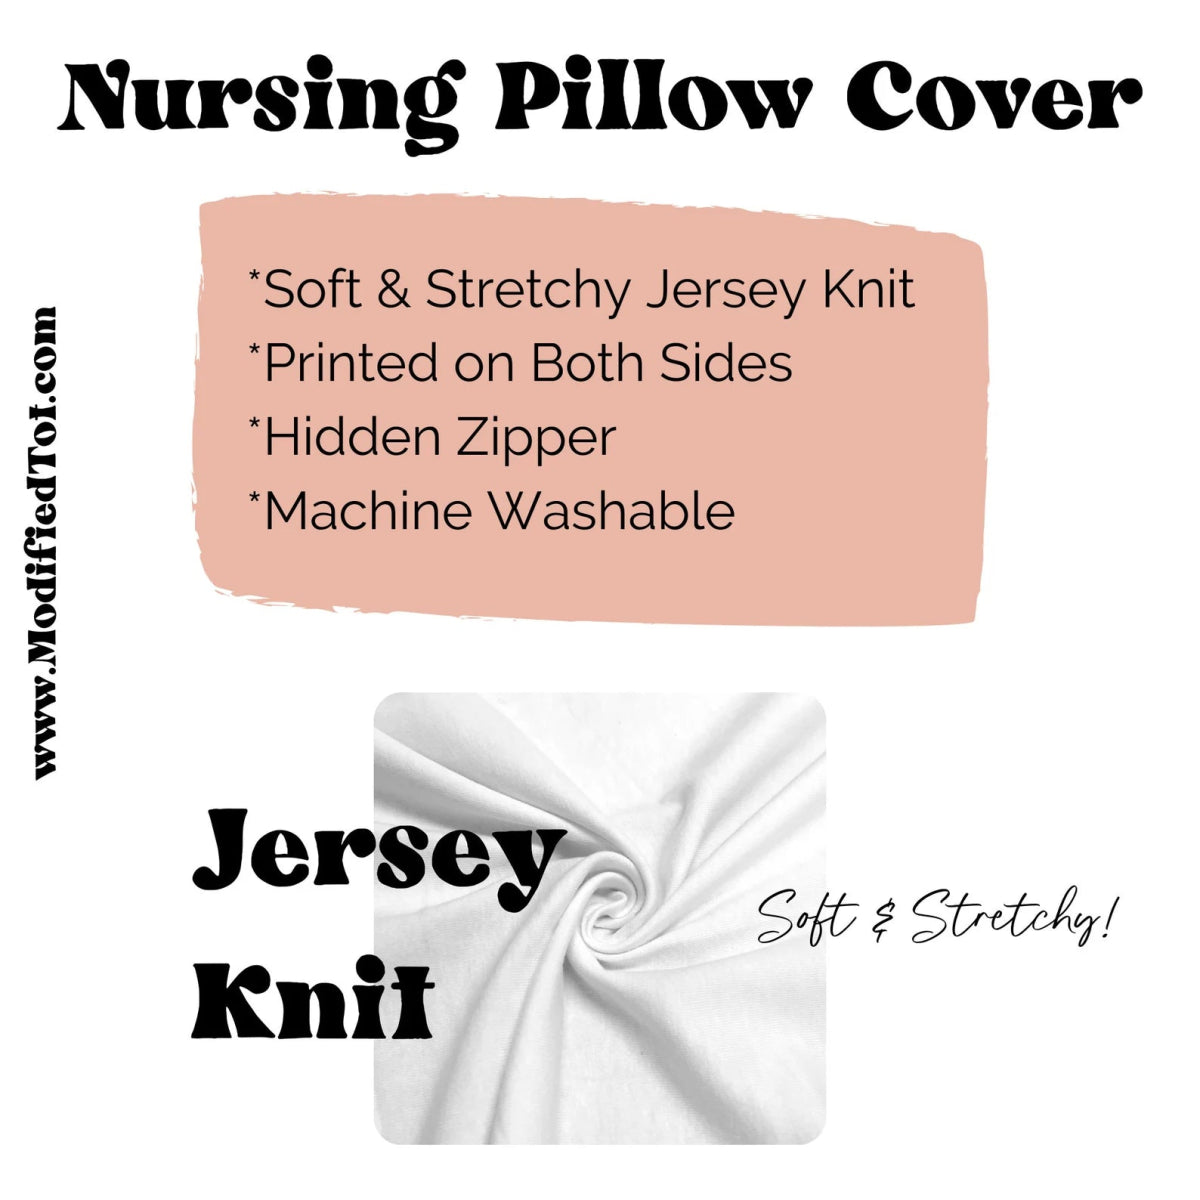 Vintage Plaid Nursing Pillow Cover - gender_boy, Vintage Truck,